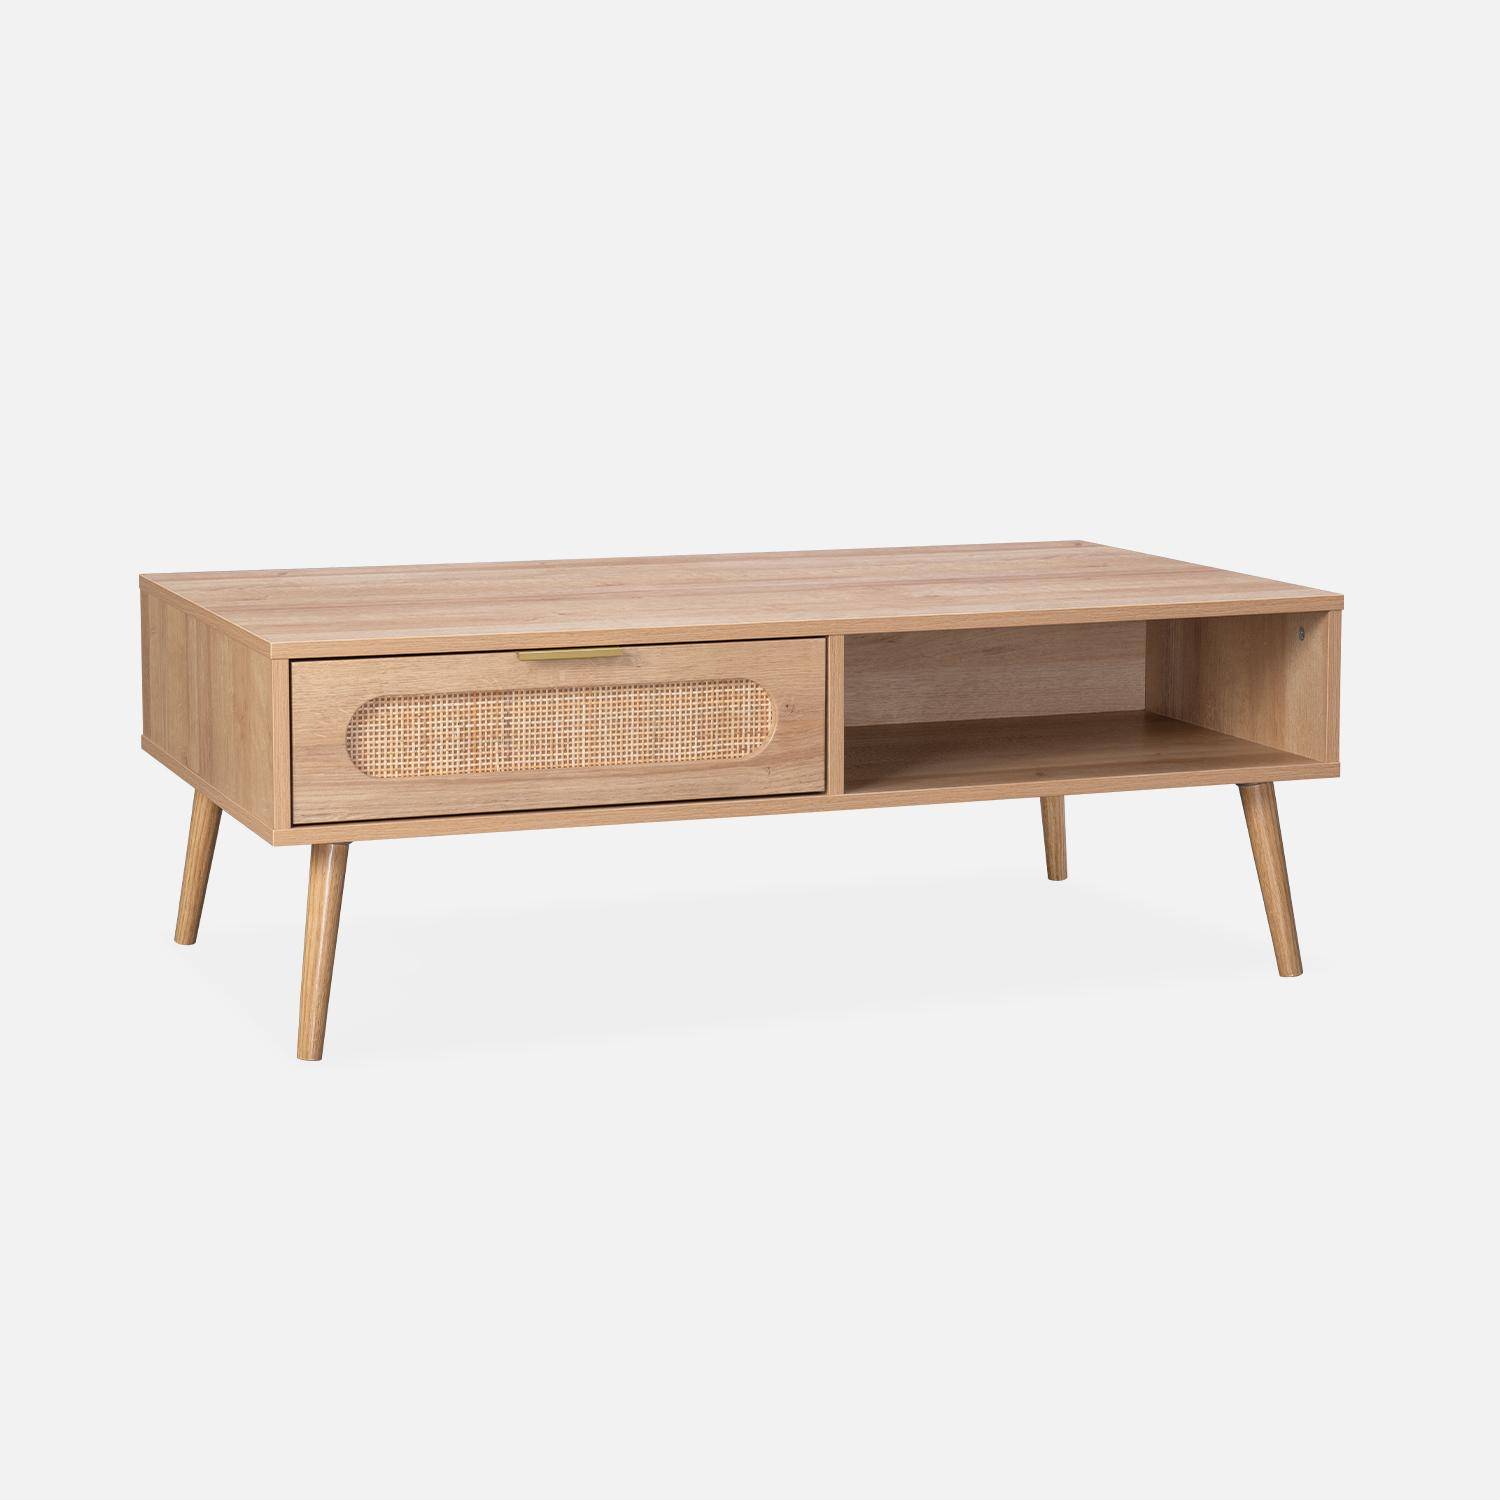 Table basse, Eva,  scandinave en cannage arrondi et en décor bois, 1 tiroir réversible L110 x l59 x H39cm Photo4